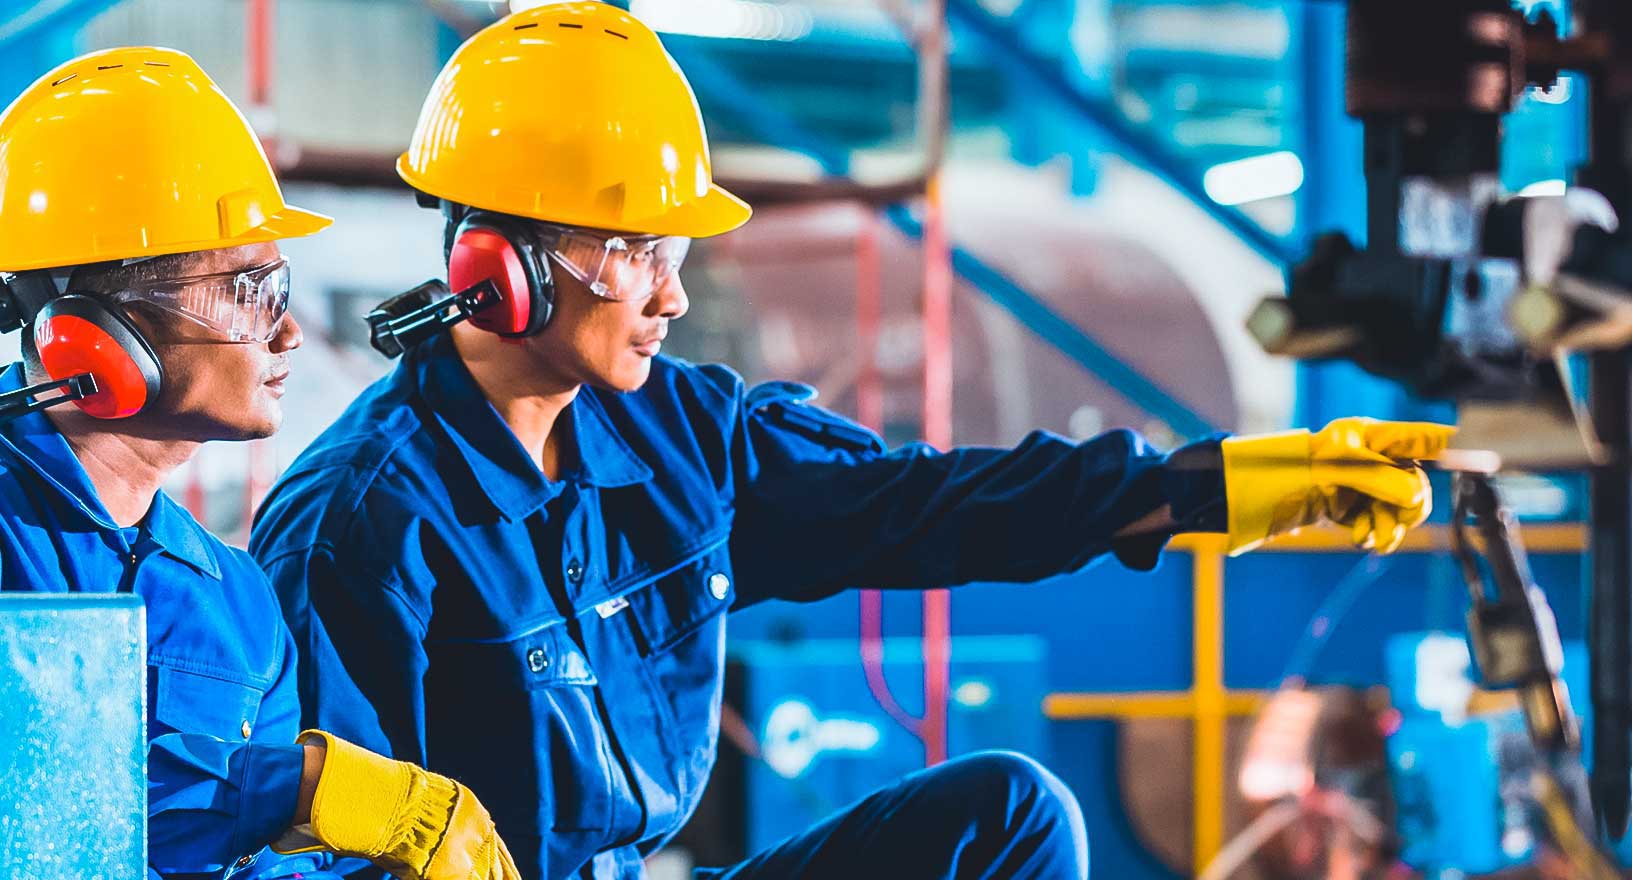 Trabajadores en entornos de fabricación, practicando la seguridad en el lugar de trabajo con cascos, protección auditiva y guantes